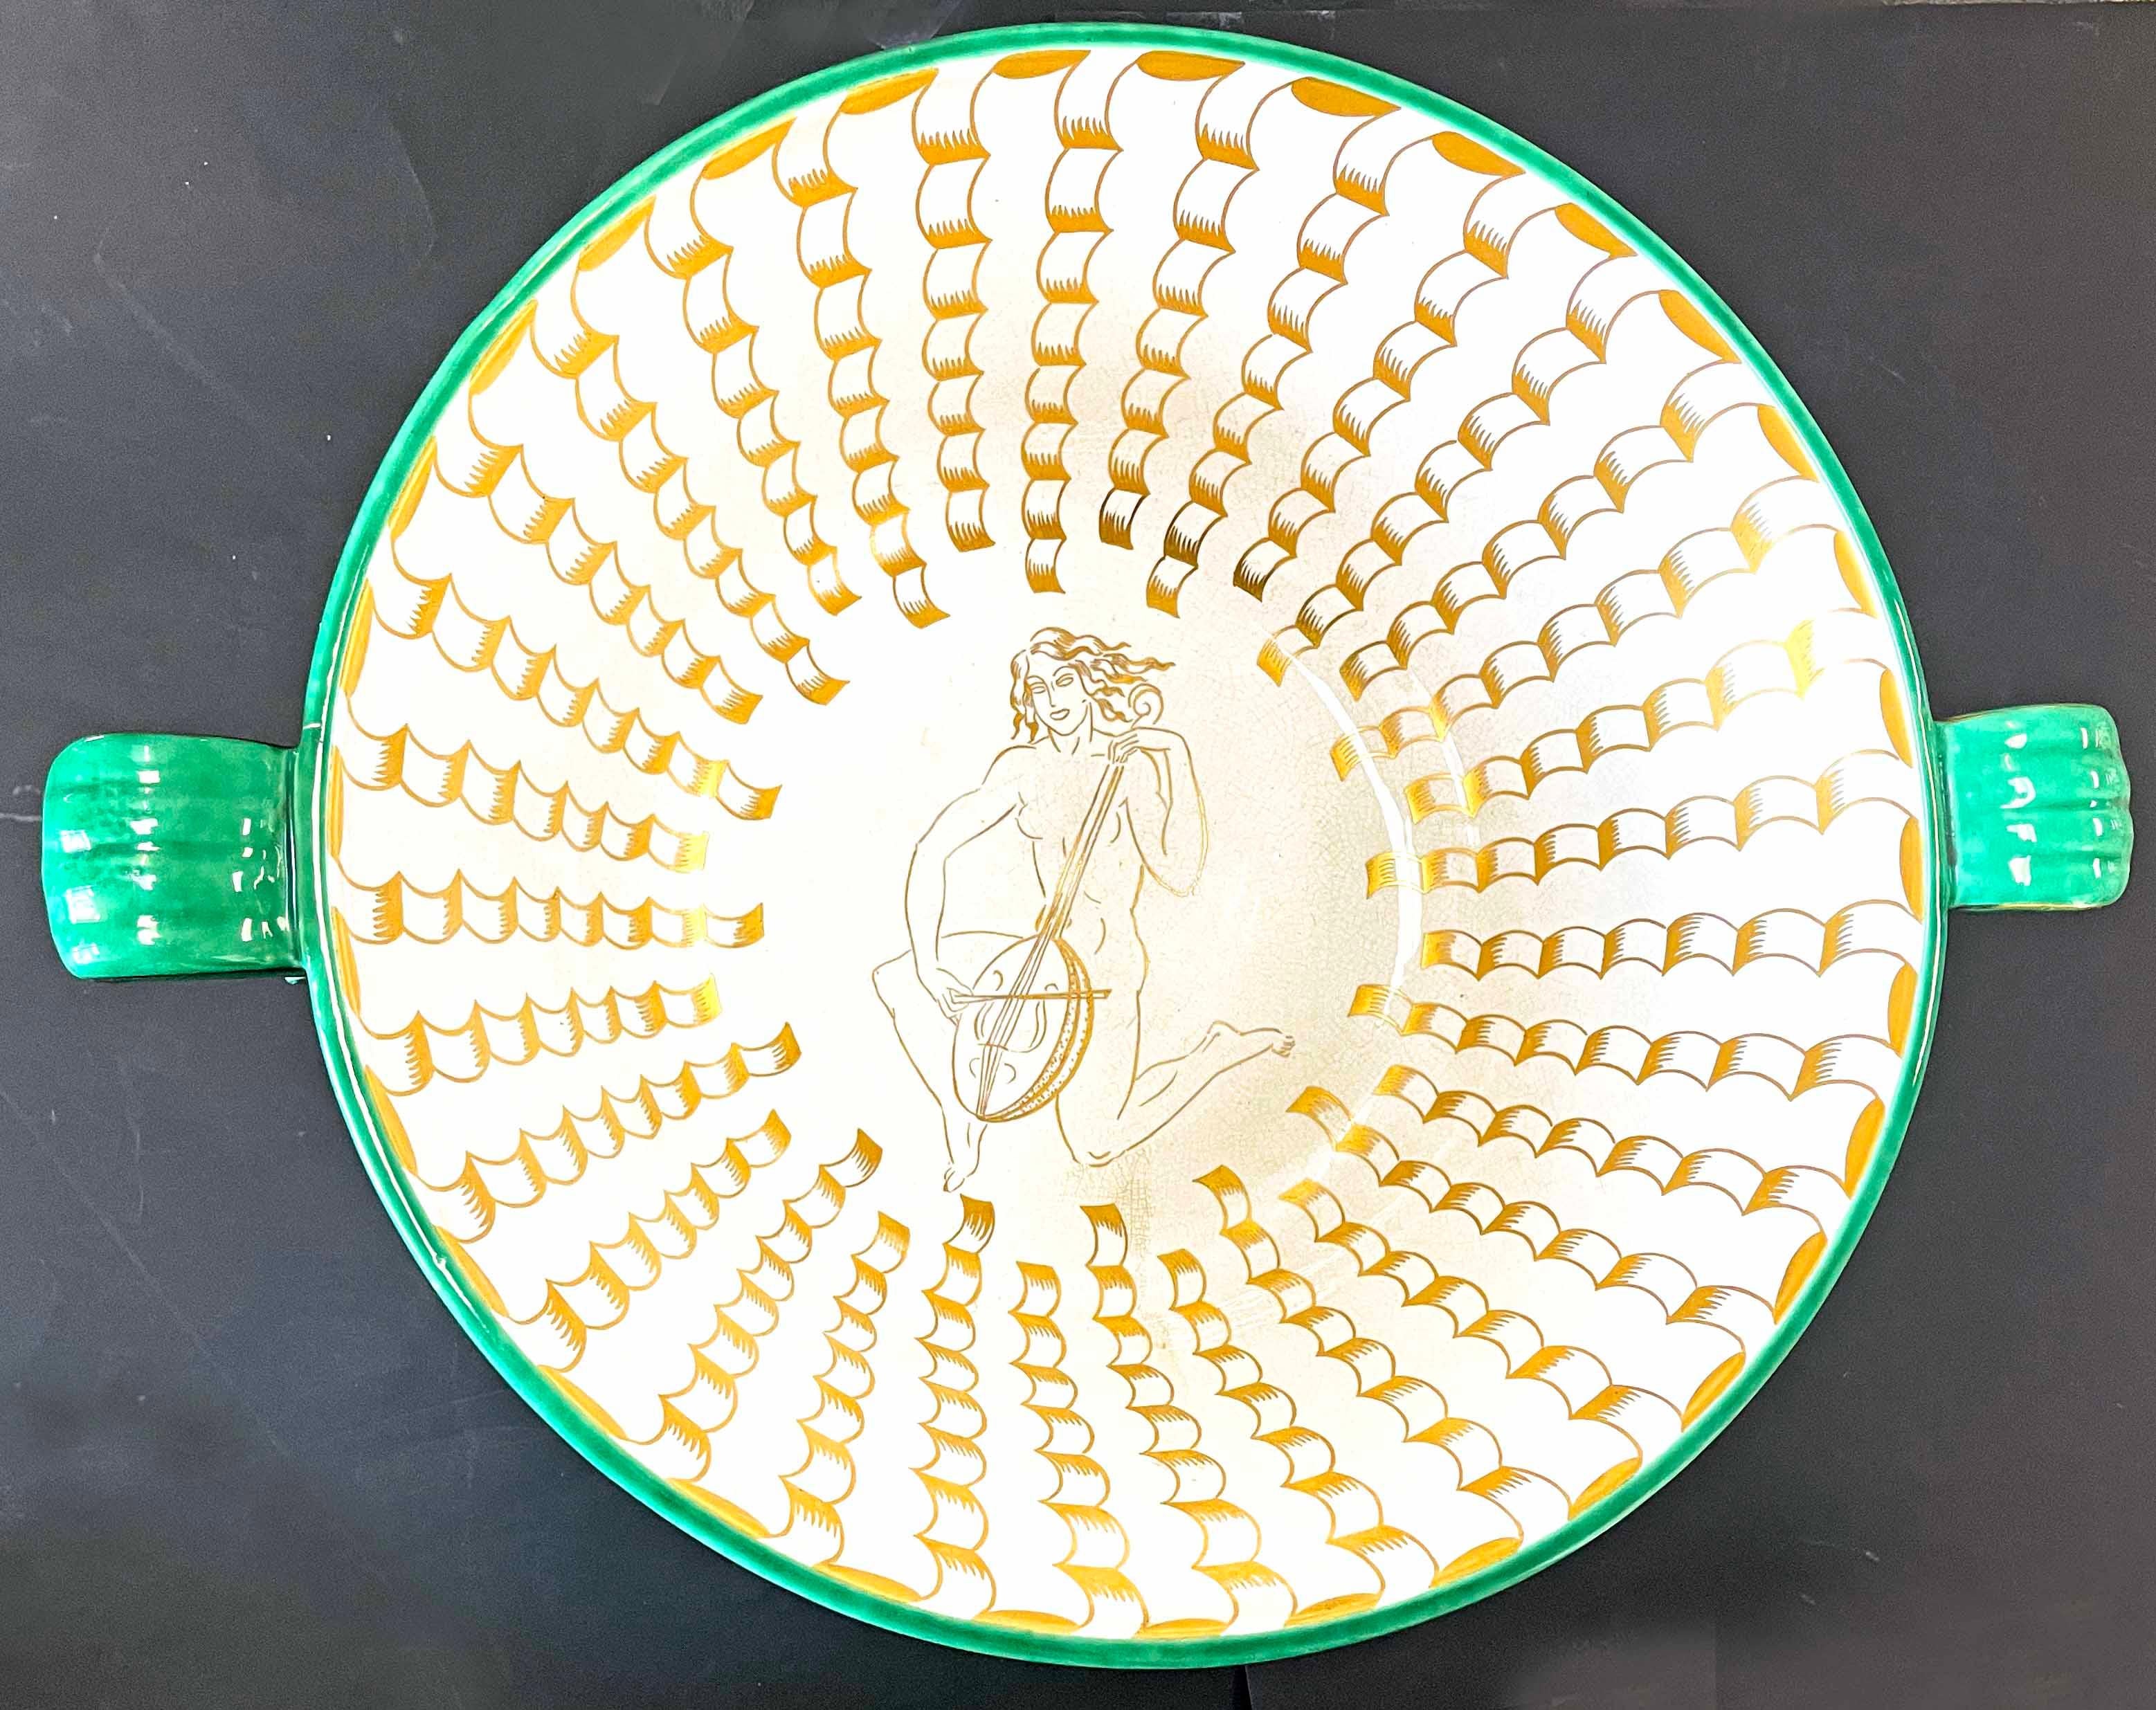 Ein spektakuläres Beispiel für skandinavisches Art-déco-Design ist diese Bowlenschüssel mit geometrischen Henkeln und Meerjungfrauenfiguren, die in Gold auf jadegrünem Grund appliziert sind. Sie ist ein sehr frühes Beispiel für Wilhelm Kåges